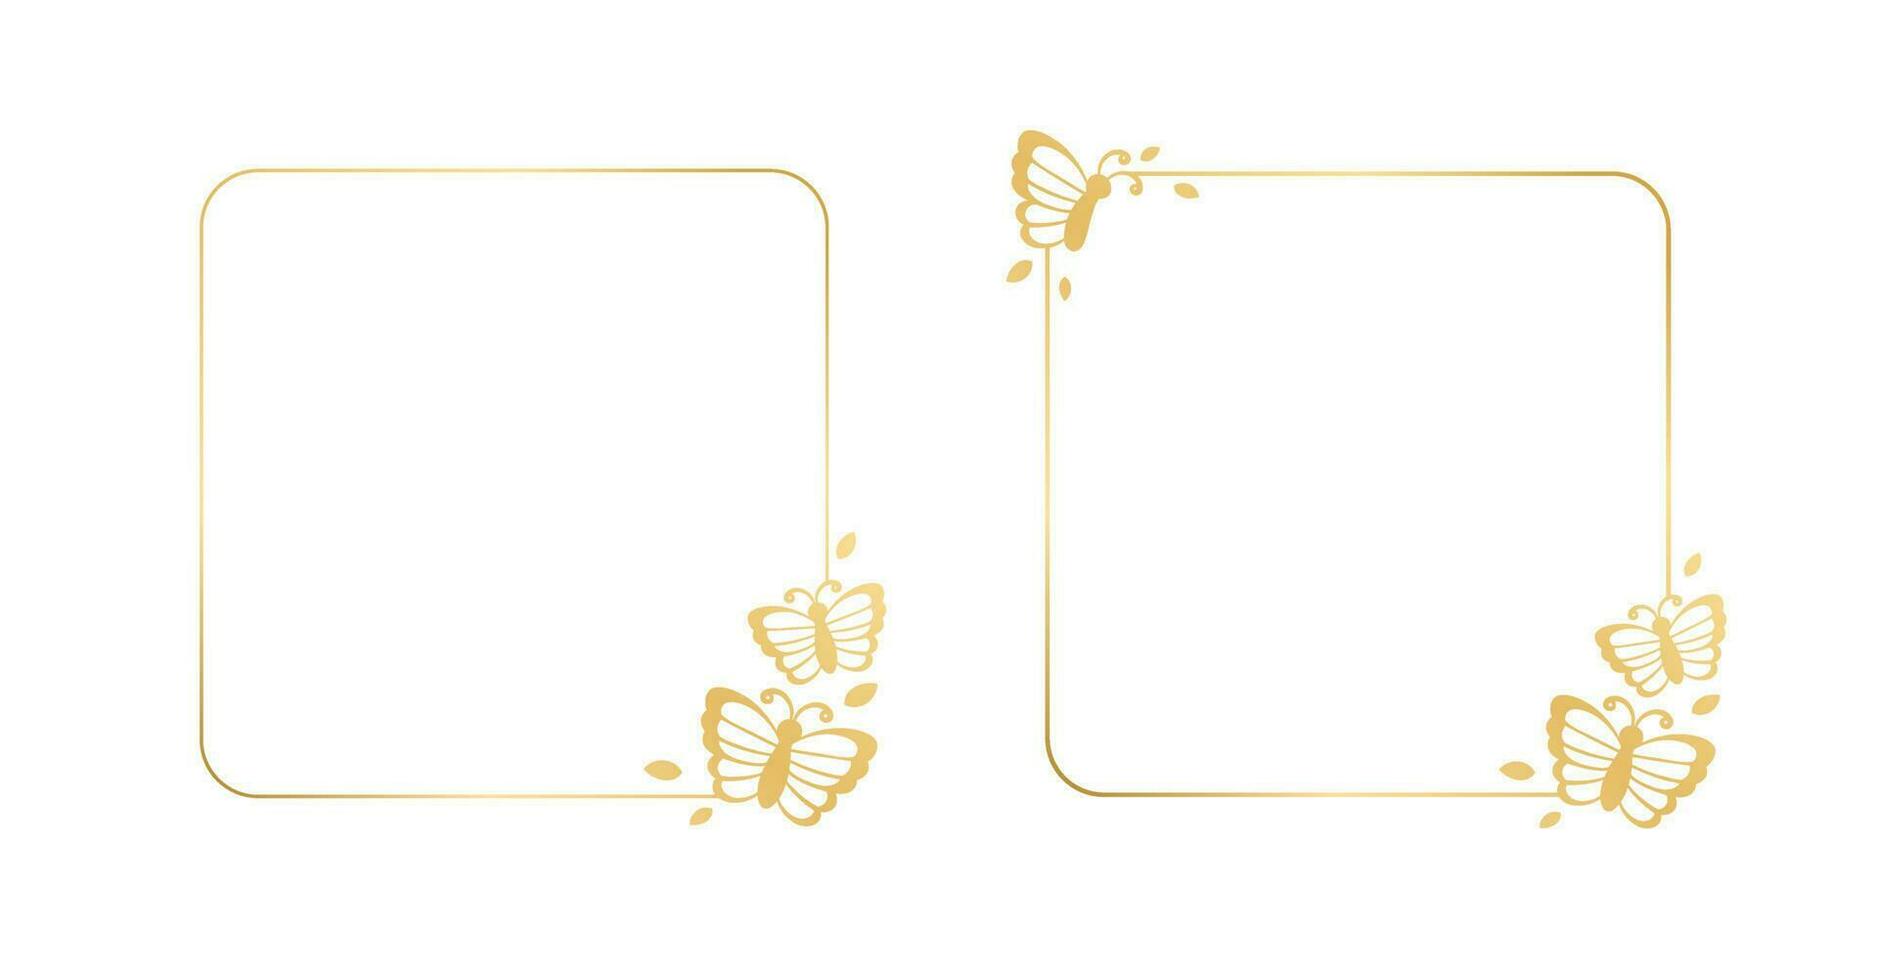 plein goud kader met vlinders silhouet vector illustratie set. abstract gouden grens voor voorjaar zomer elegant ontwerp elementen